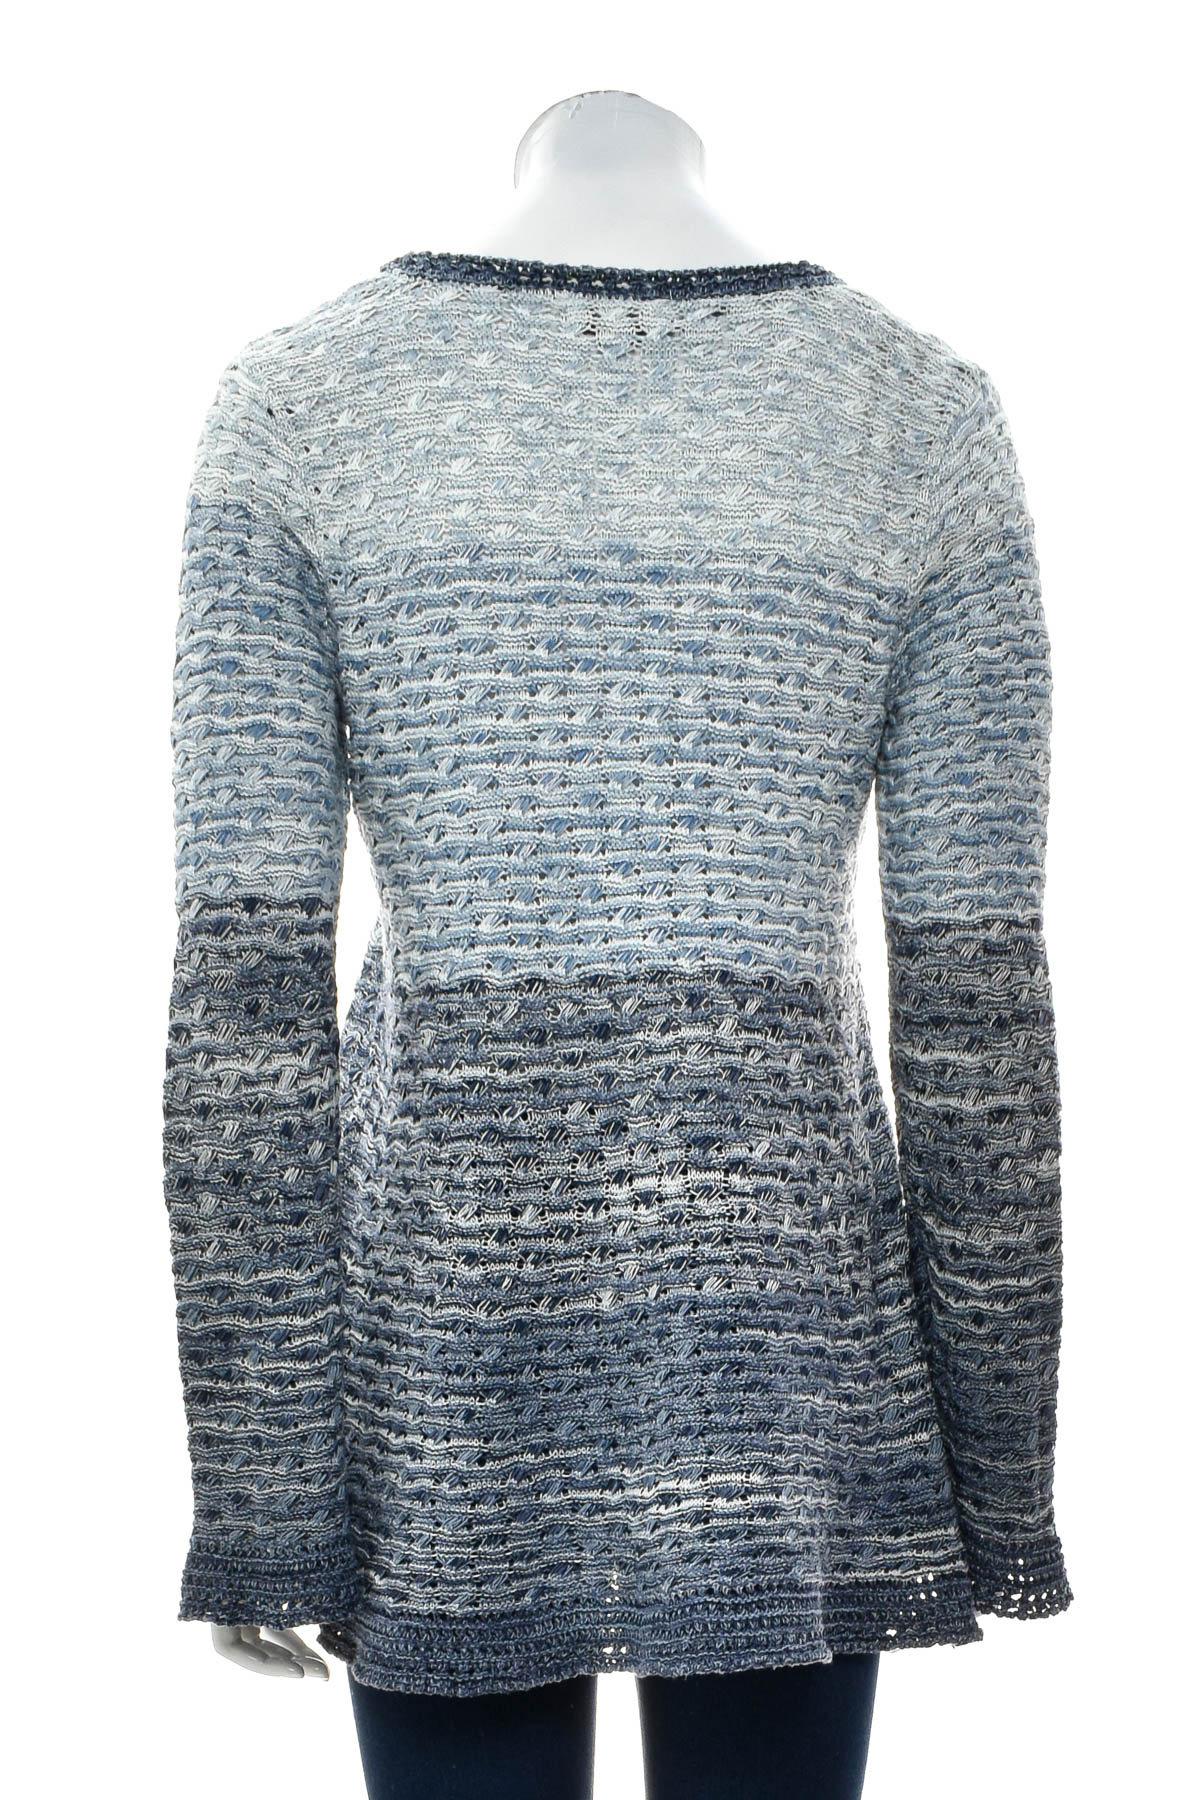 Women's sweater - Style & Co. - 1